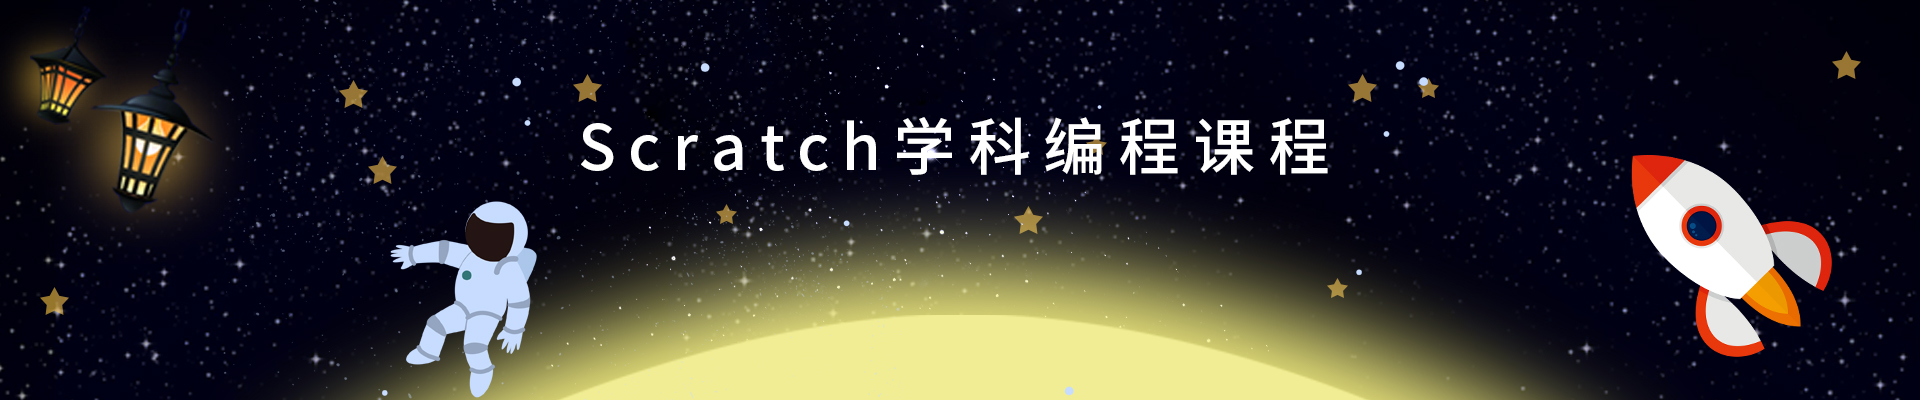 重庆Scratch少儿编程